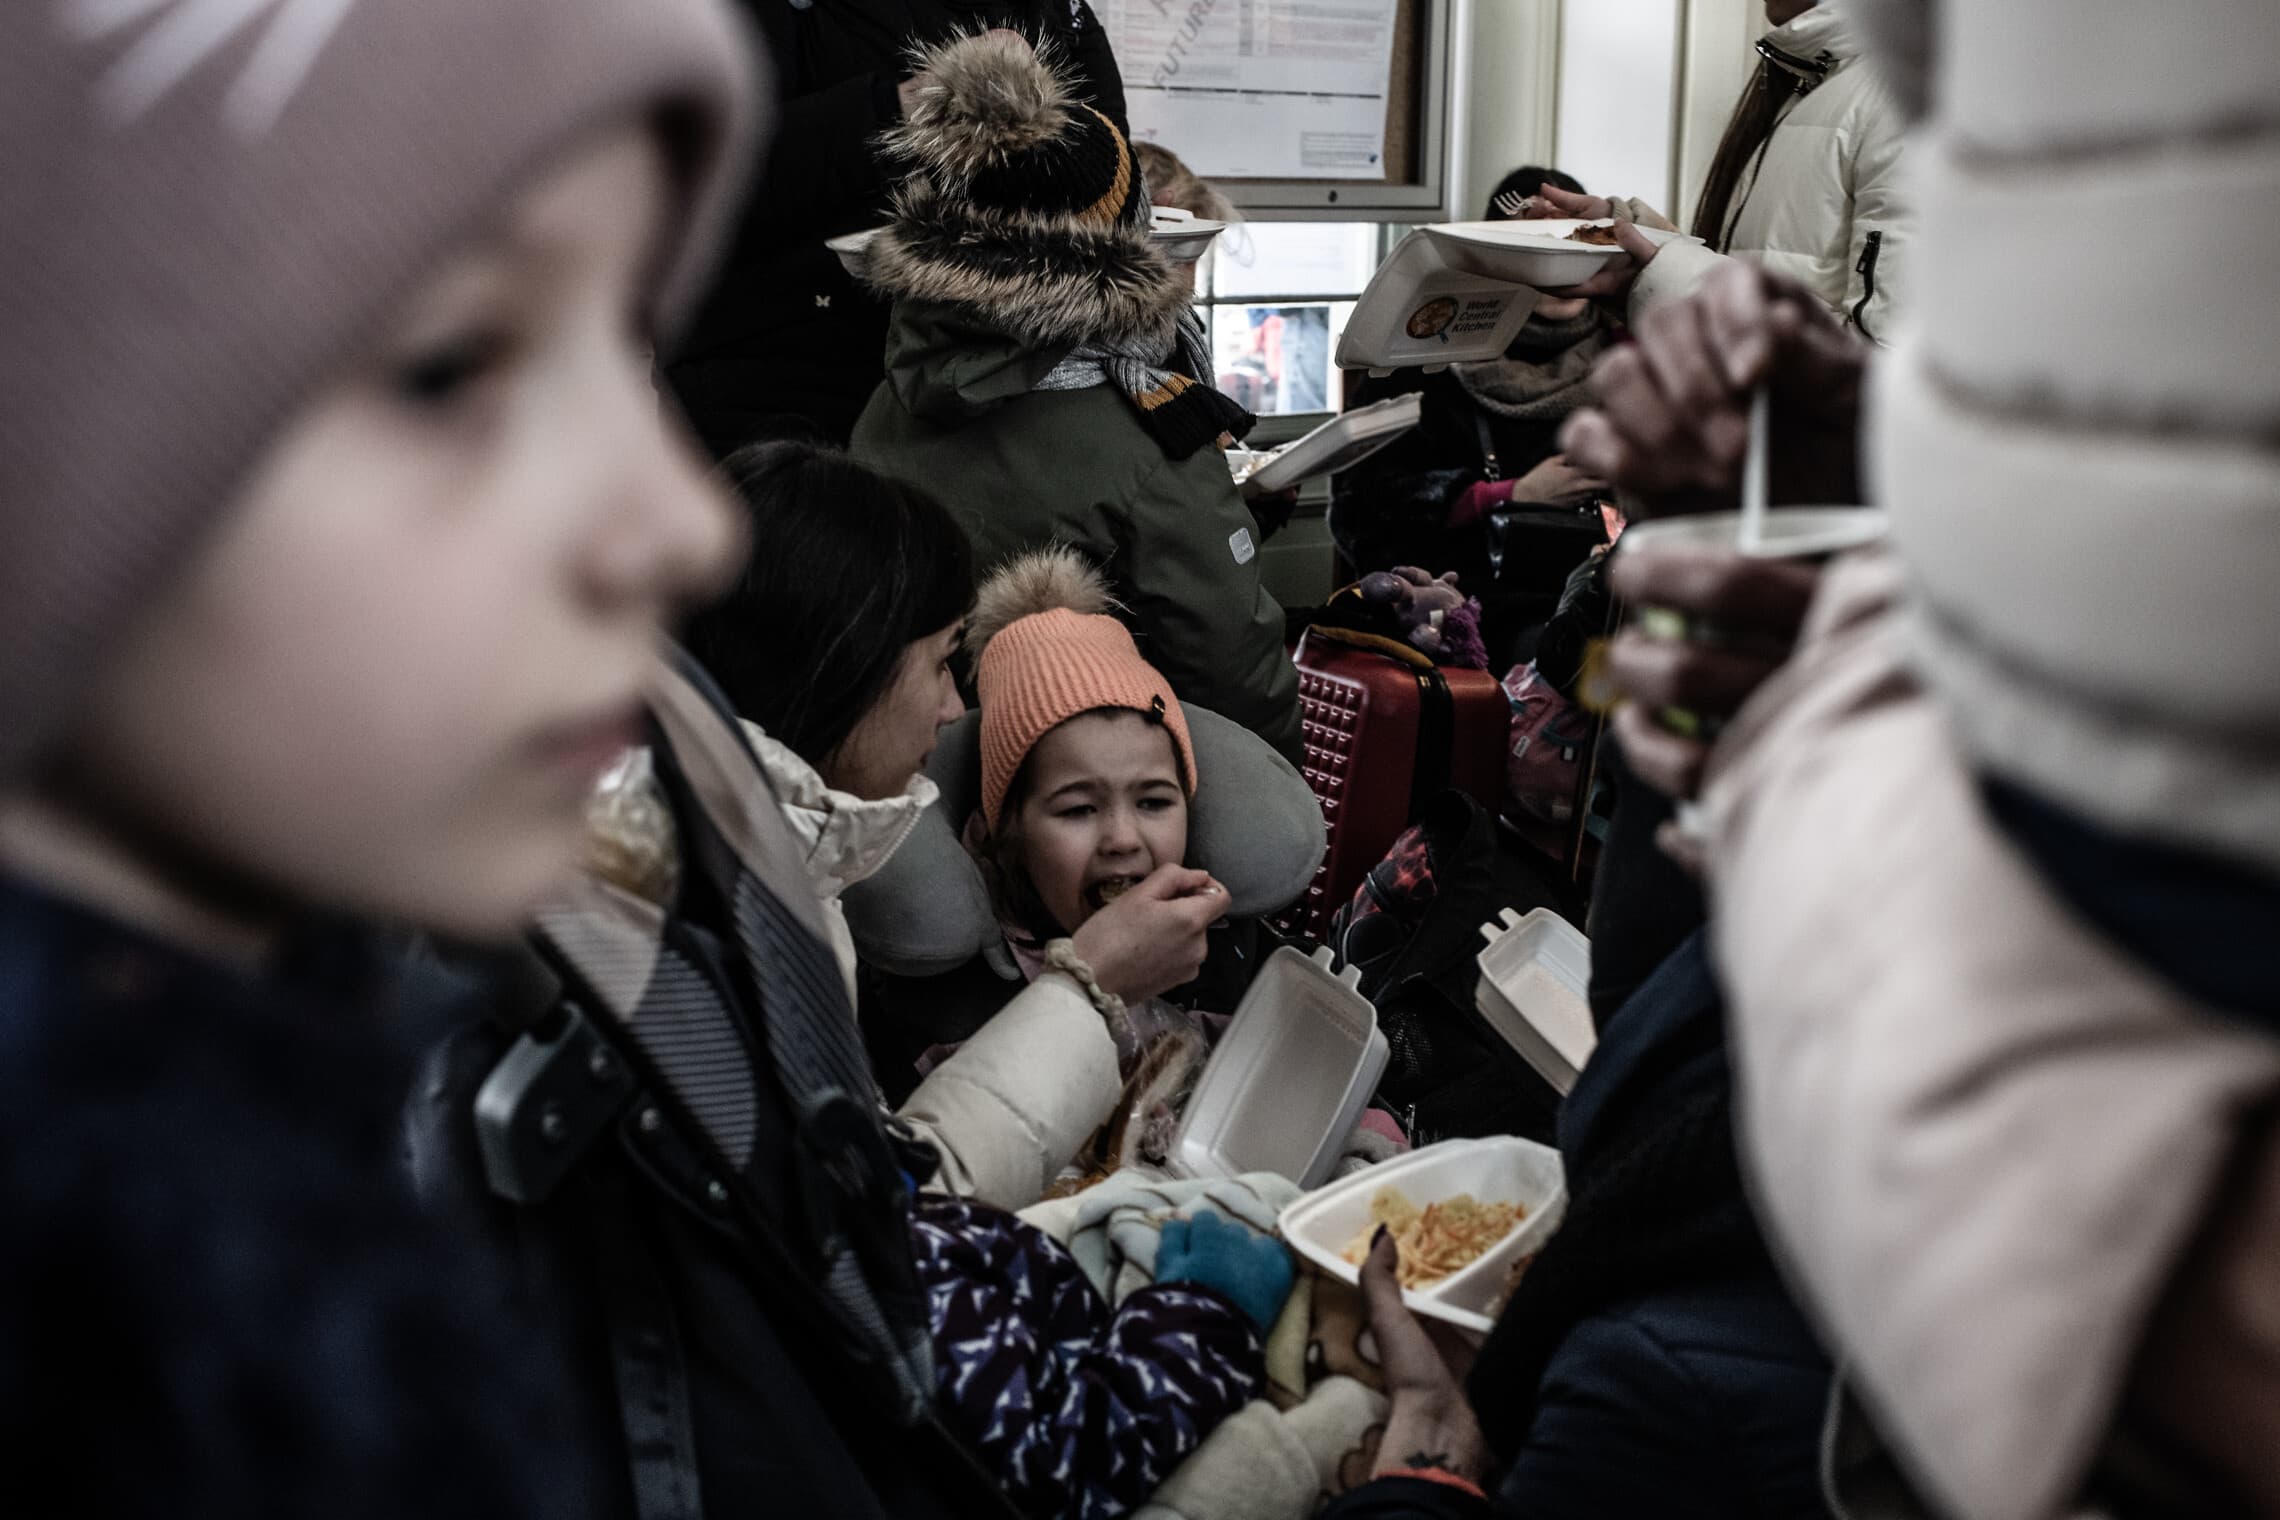 פליטה מאכילה את בתה באולם הנוסעים המרכזי בתחנת הרכבת פשמישל, פולין. פברואר 2022 (צילום: גילעד שדה)